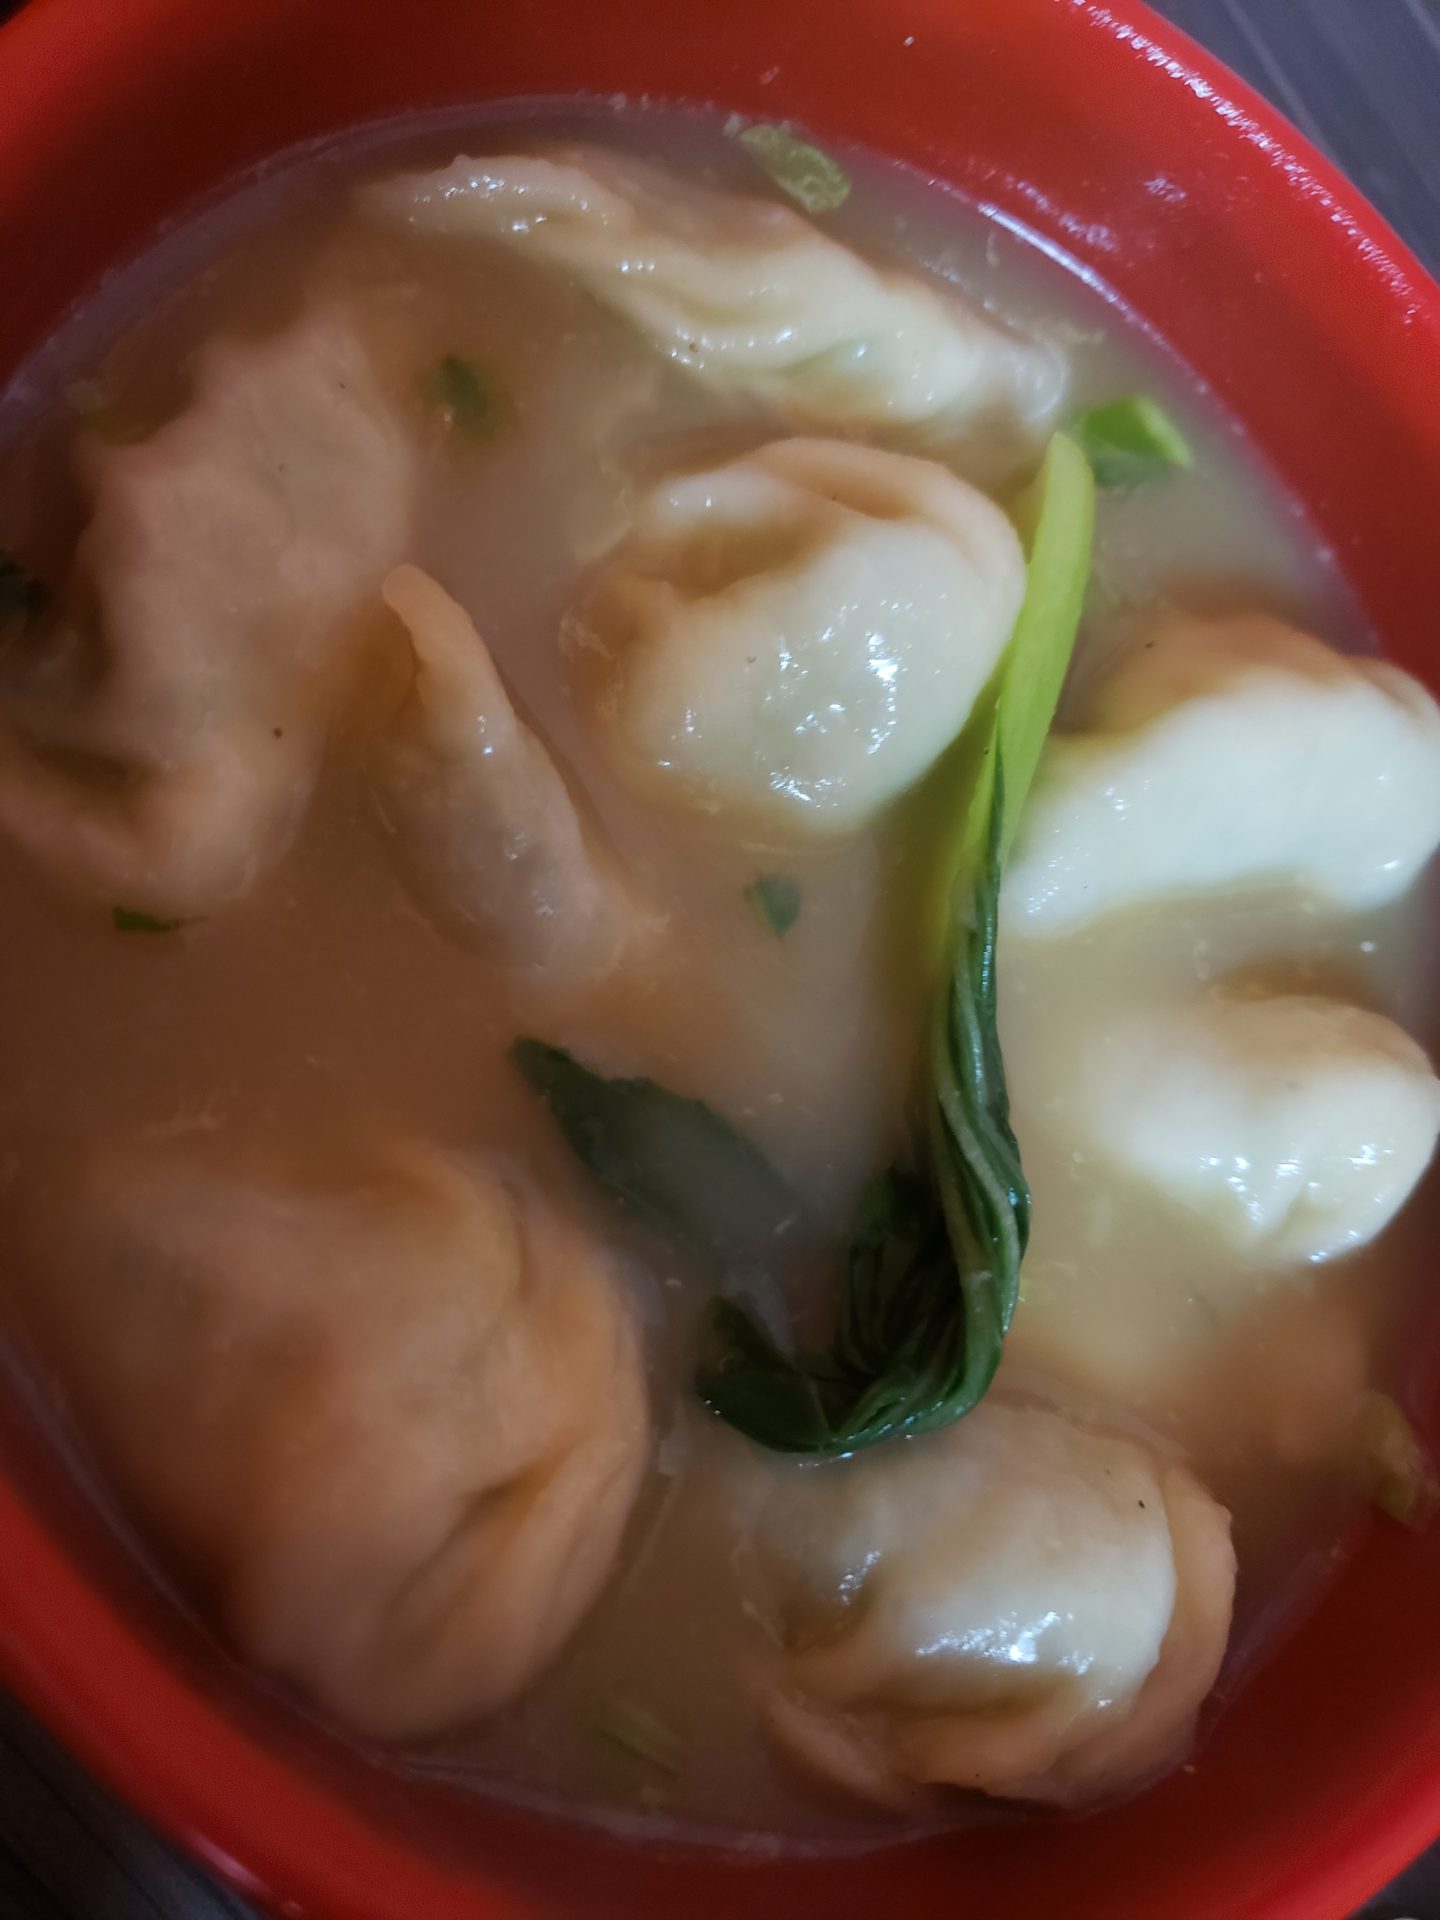 a bowl of soup with dumplings